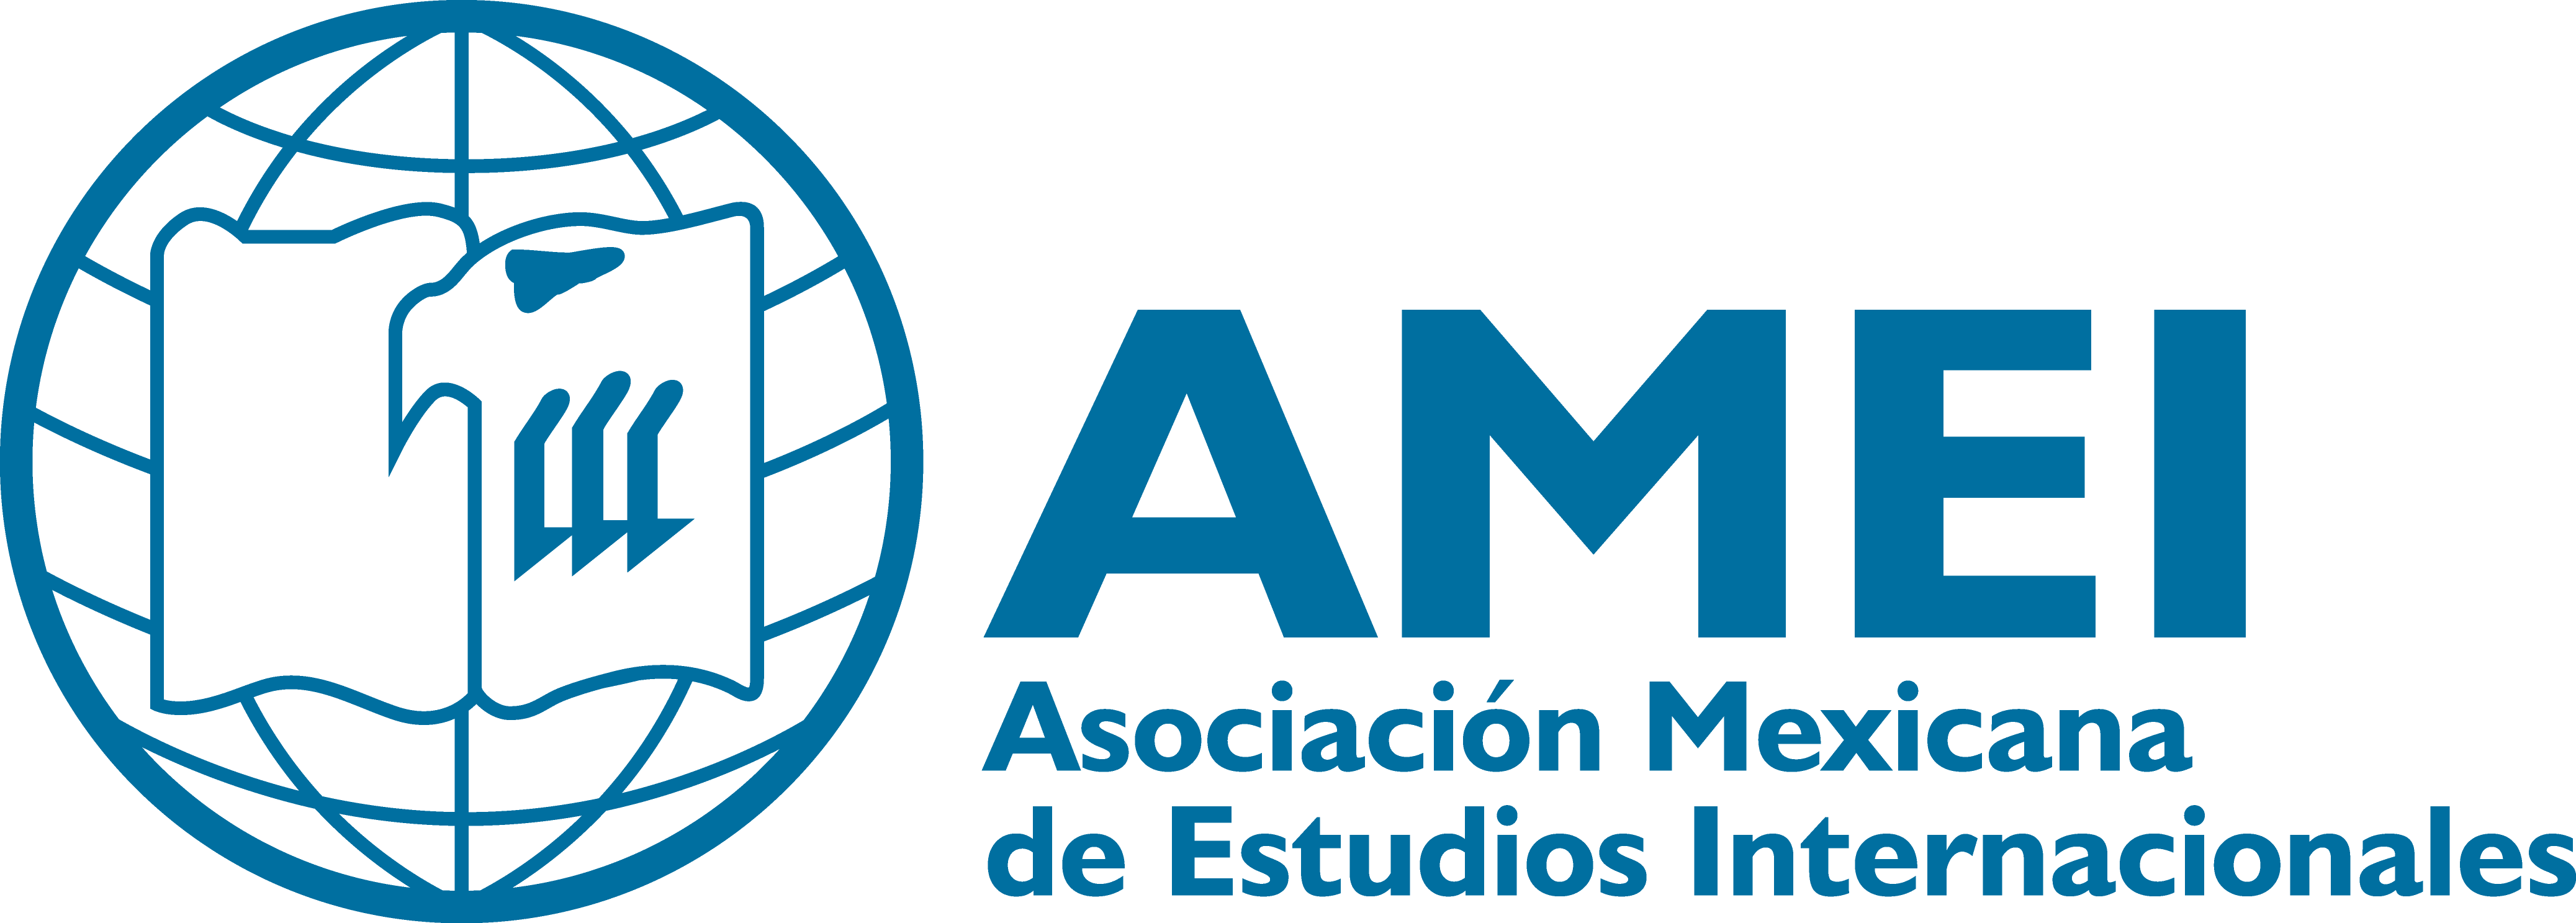 Asociación Mexicana de Estudios Internacionales A.C.